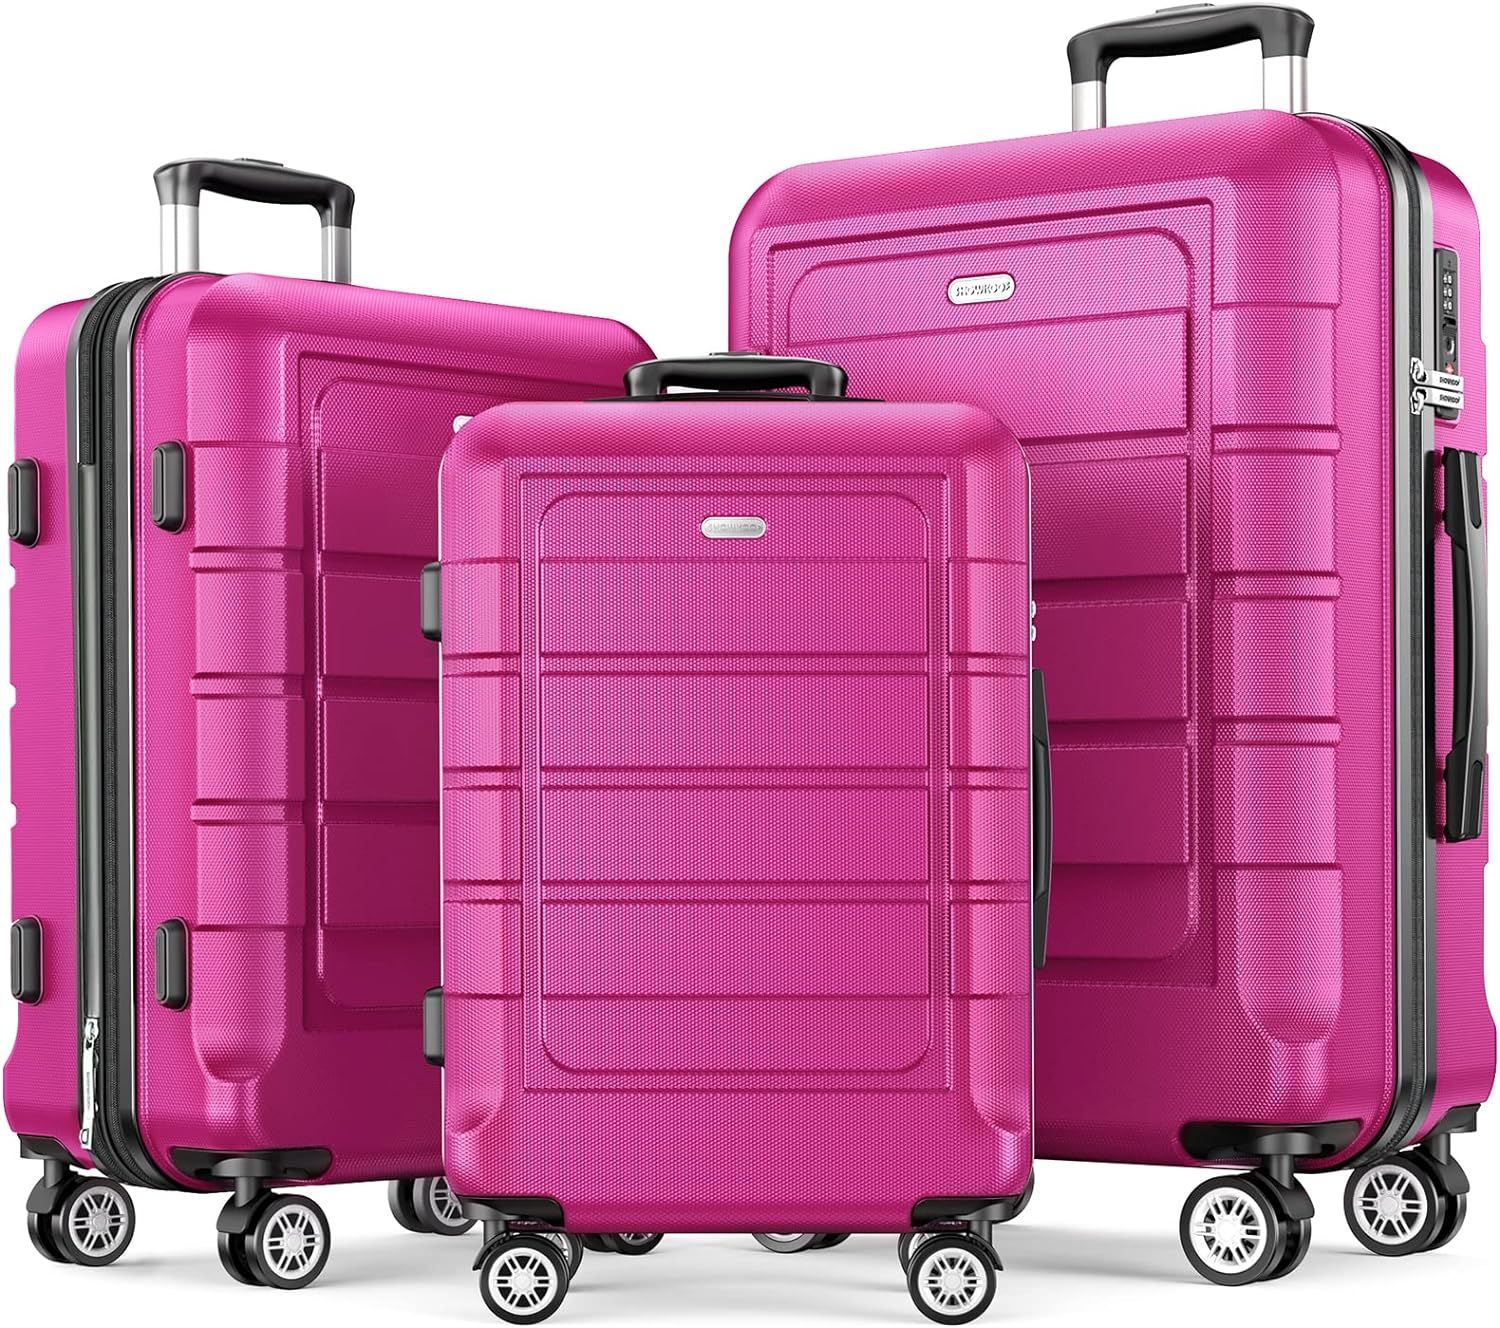 SHOWKOO Luggage Sets Expandable PC+ABS Durable Suitcase Double Wheels TSA Lock Megenta 3pcs | Amazon (US)